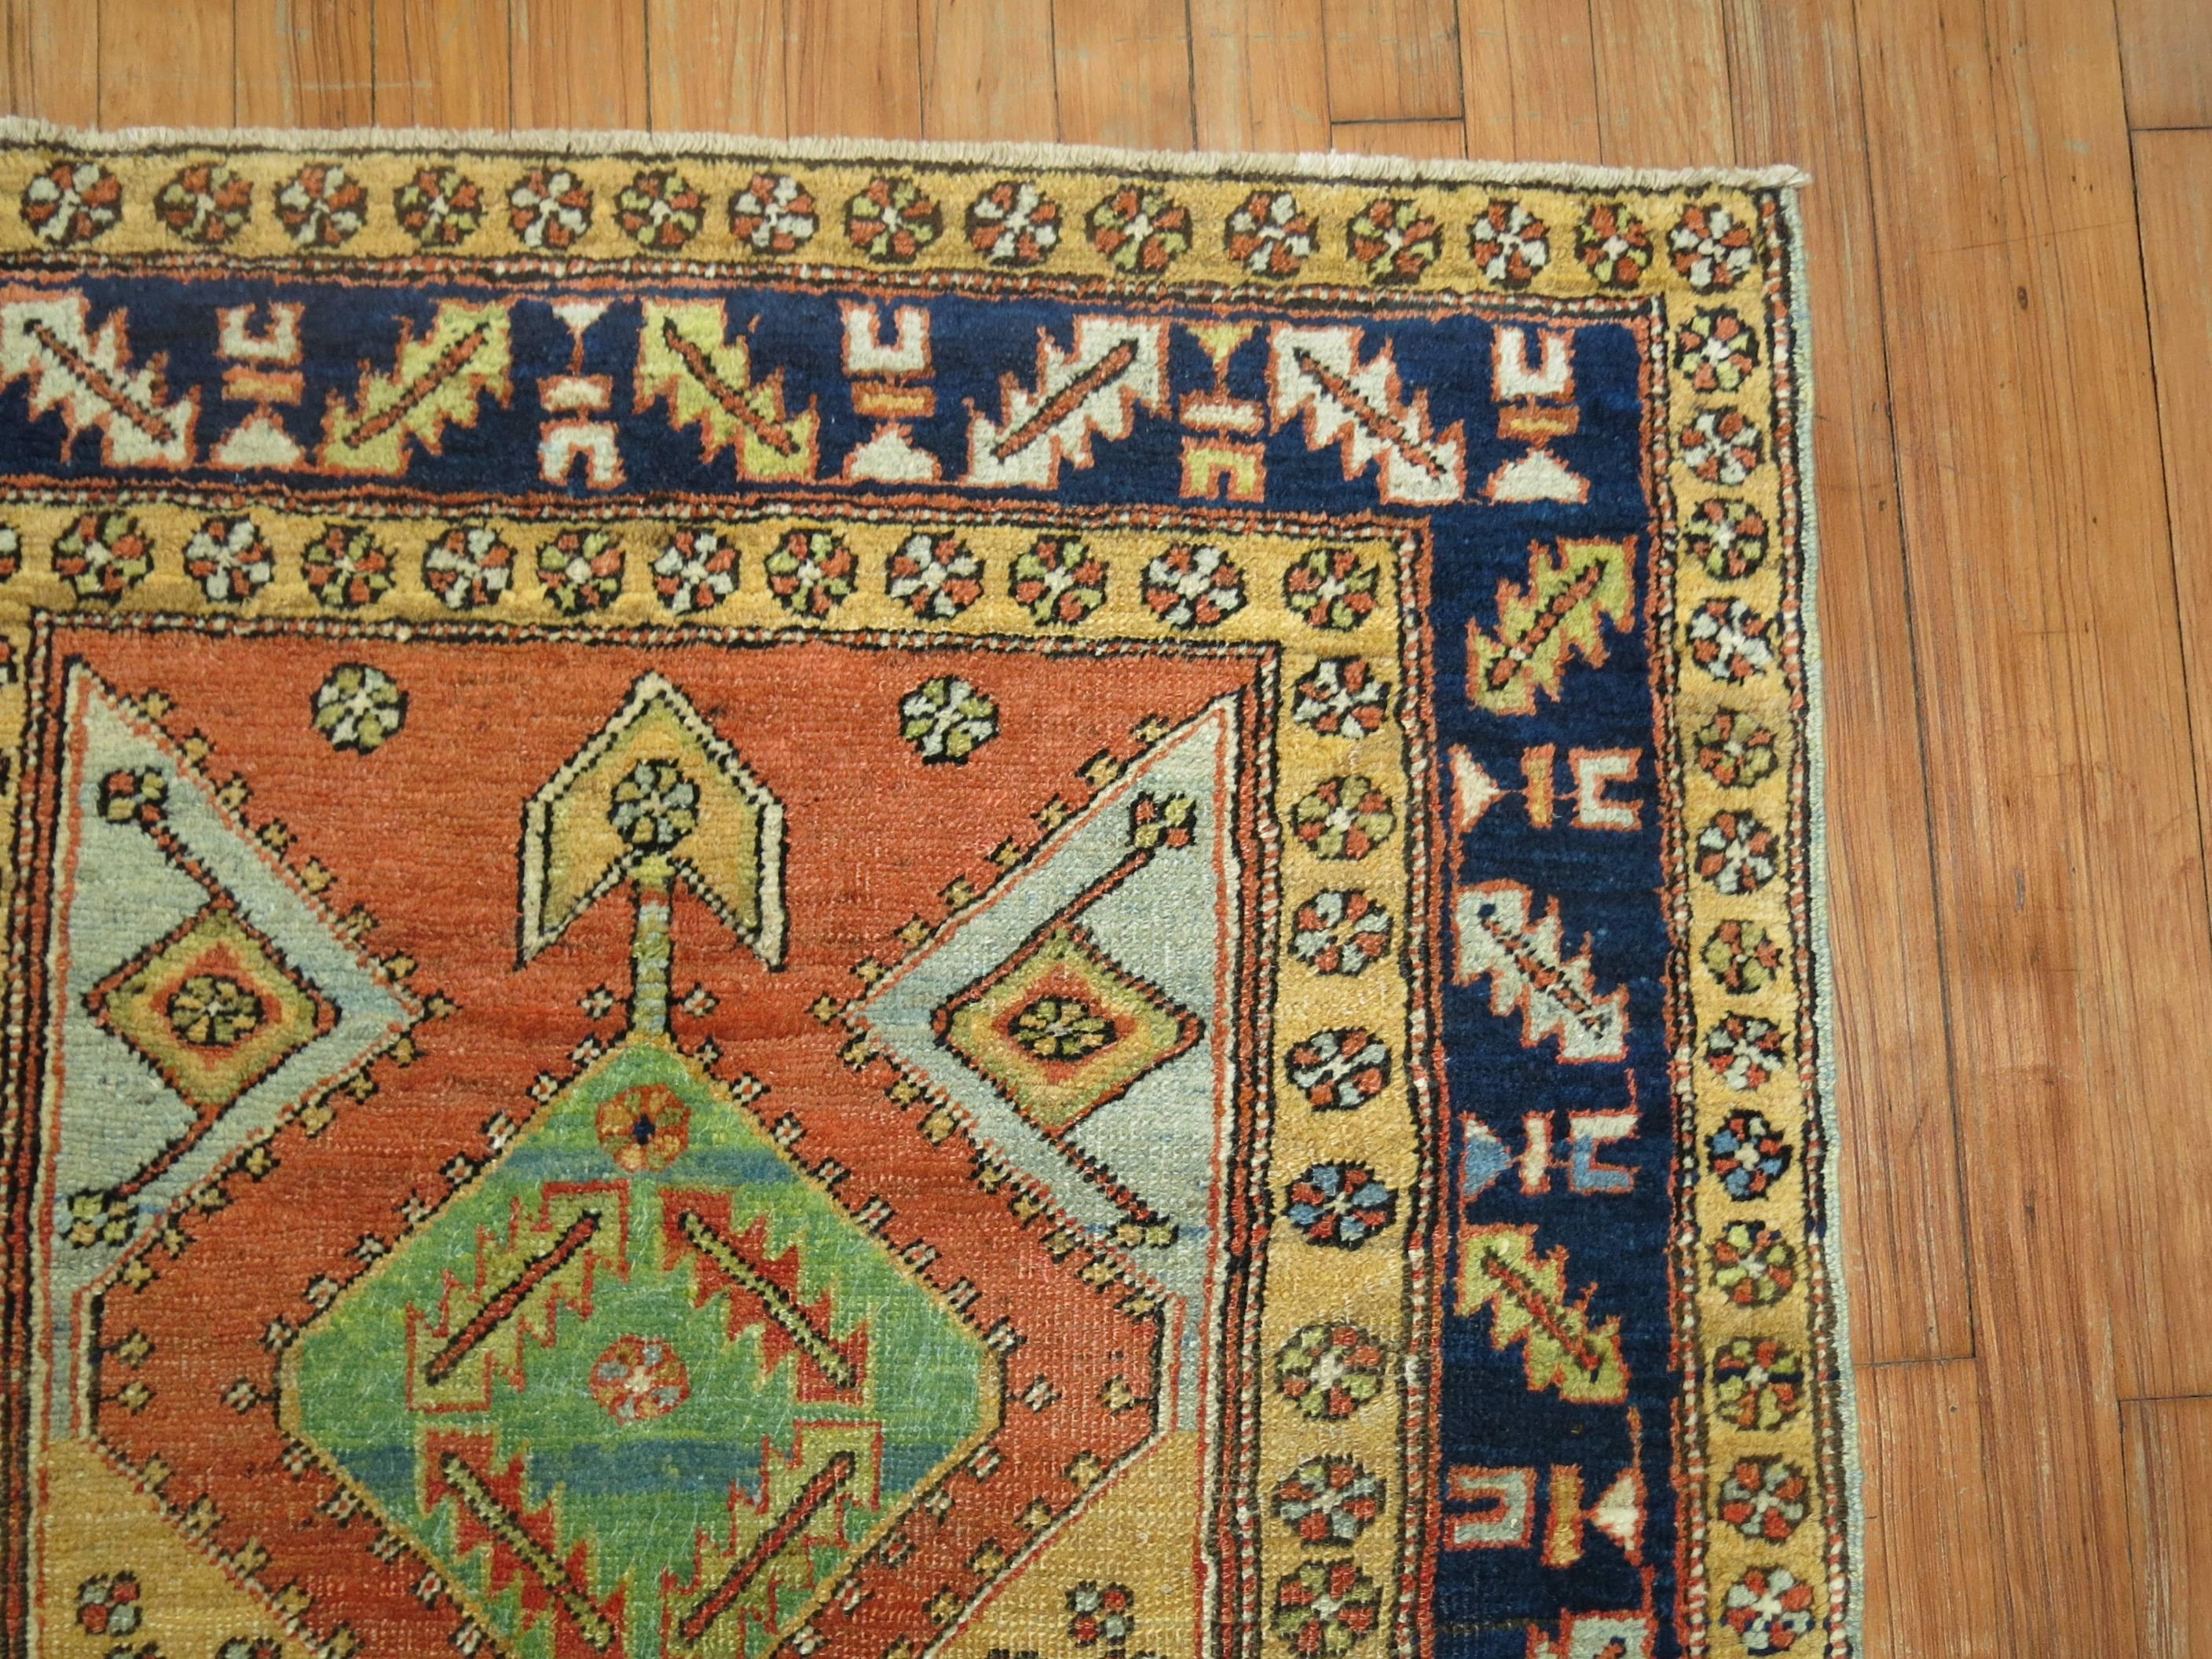 20th Century Antique Persian Heriz Rug in Bright Colors